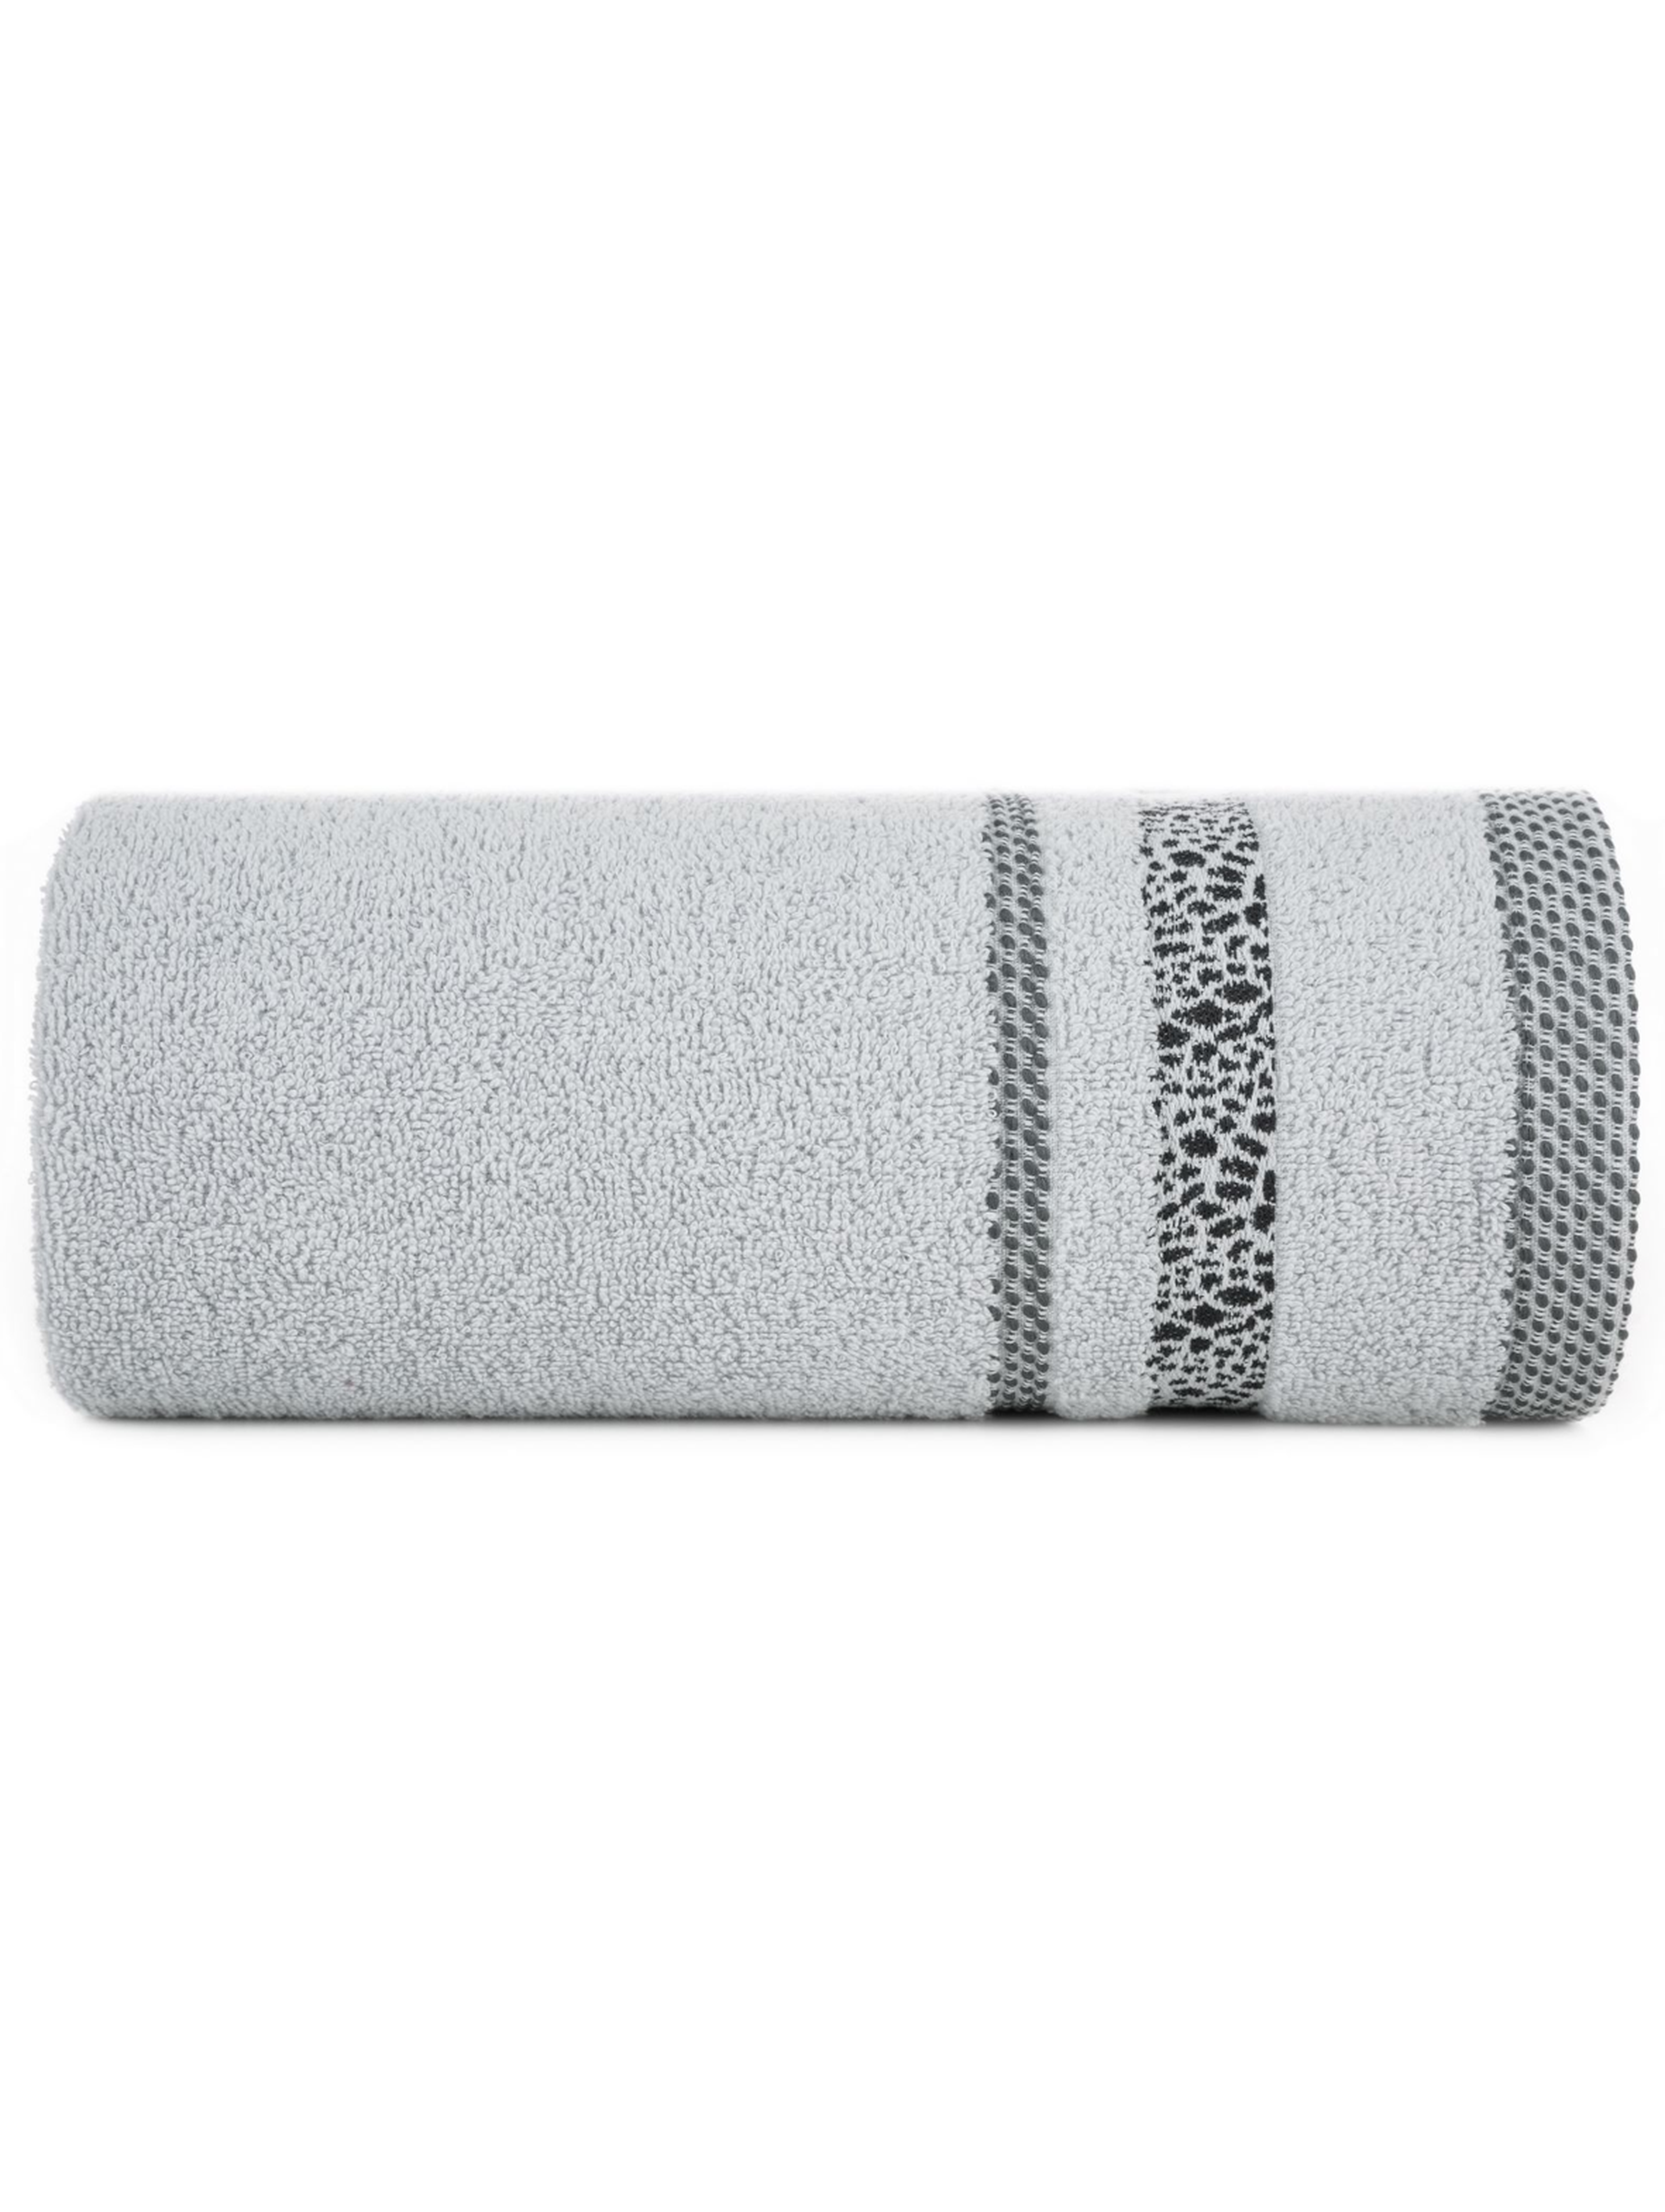 Popielaty ręcznik ze zdobieniami 50x90 cm